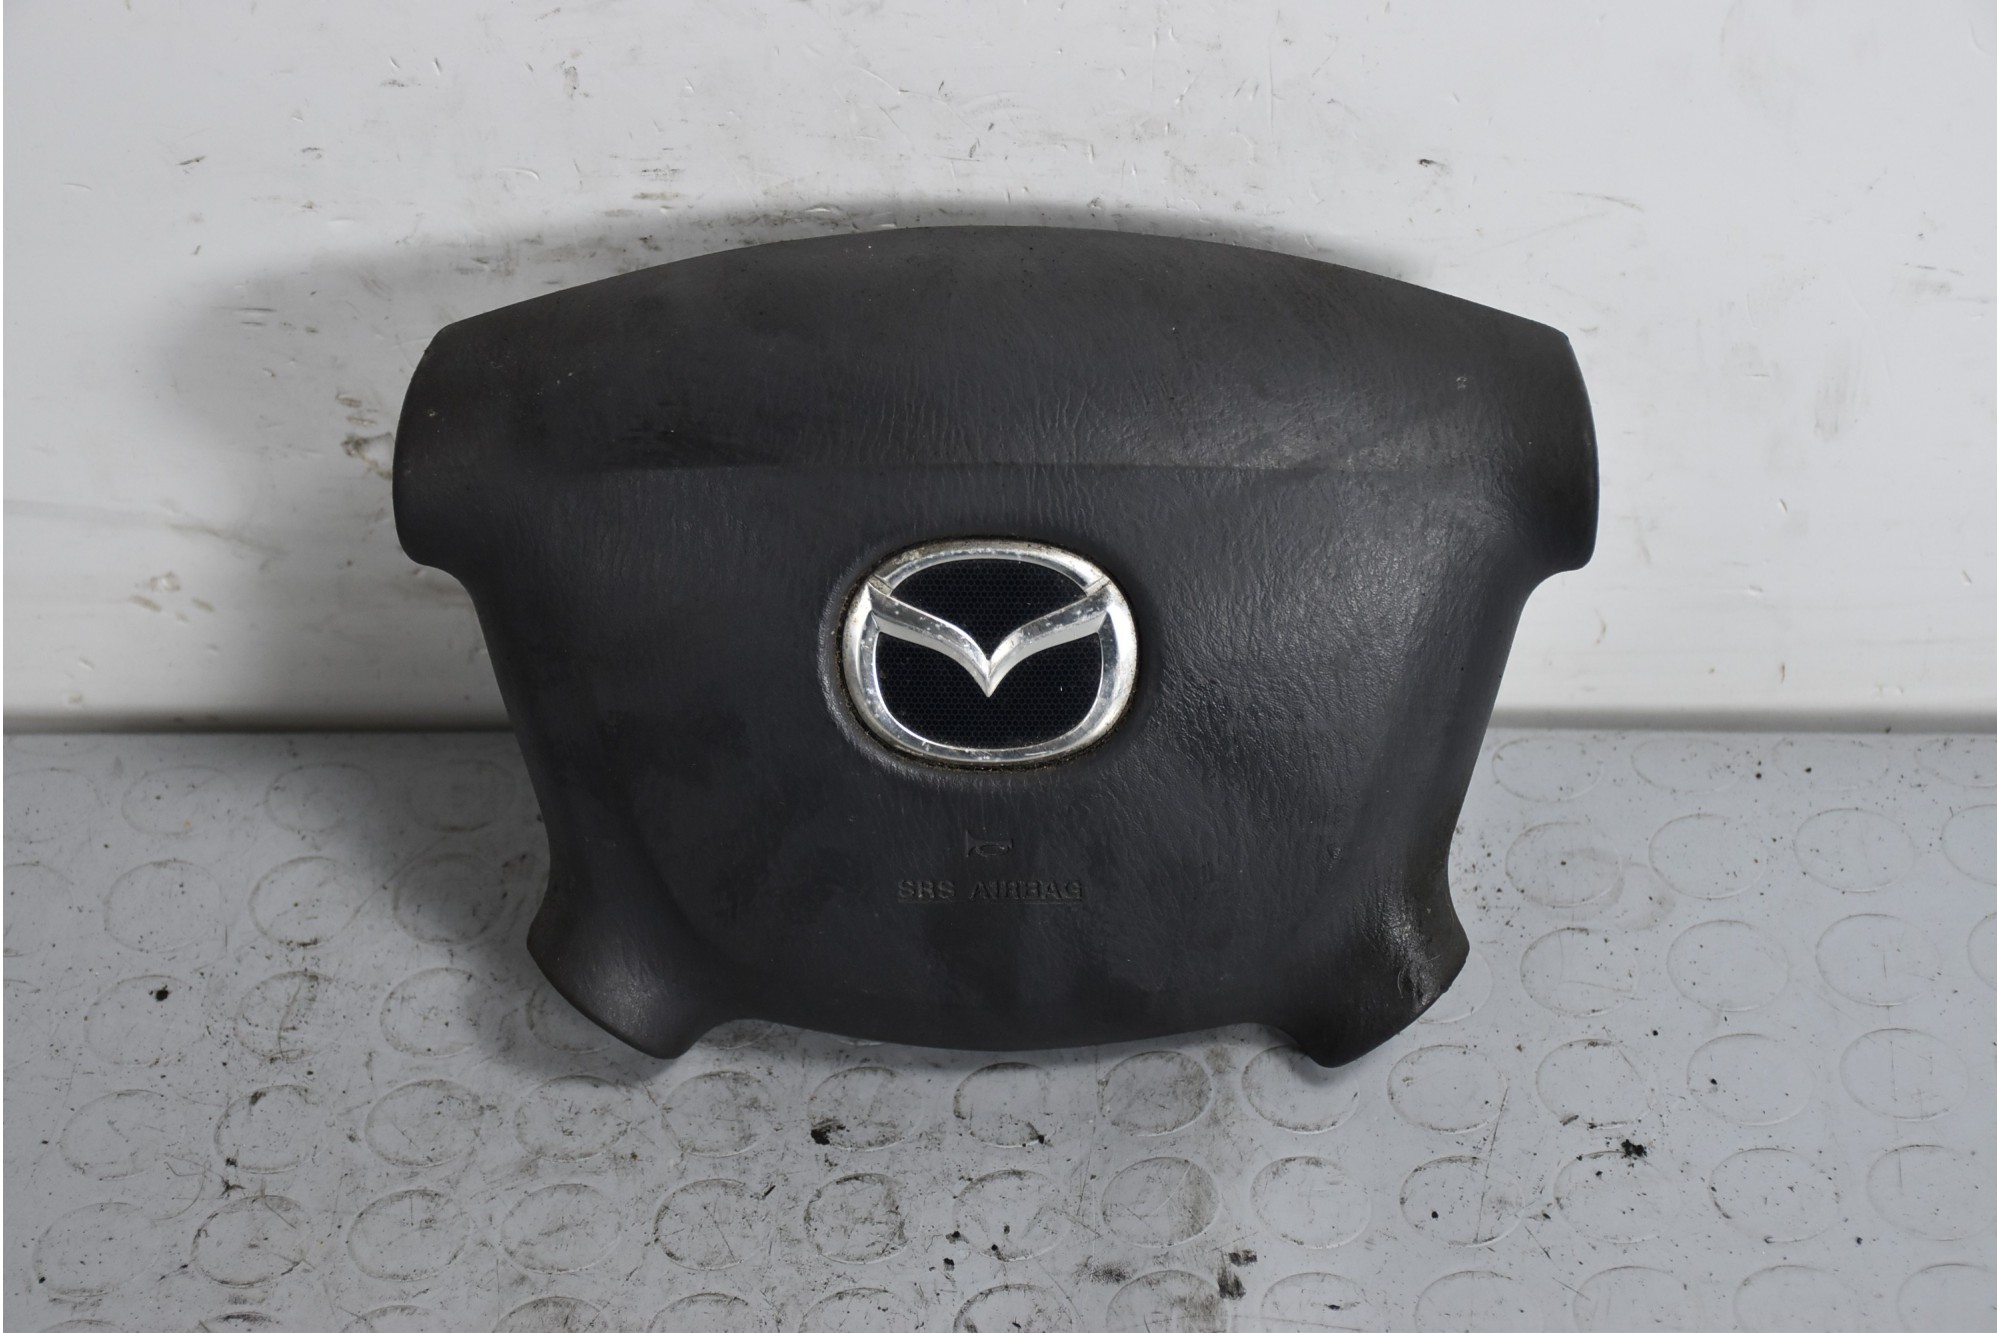 Airbag Volante Mazda Premacy dal 1999 al 2005 Cod t93141a  1637852815613